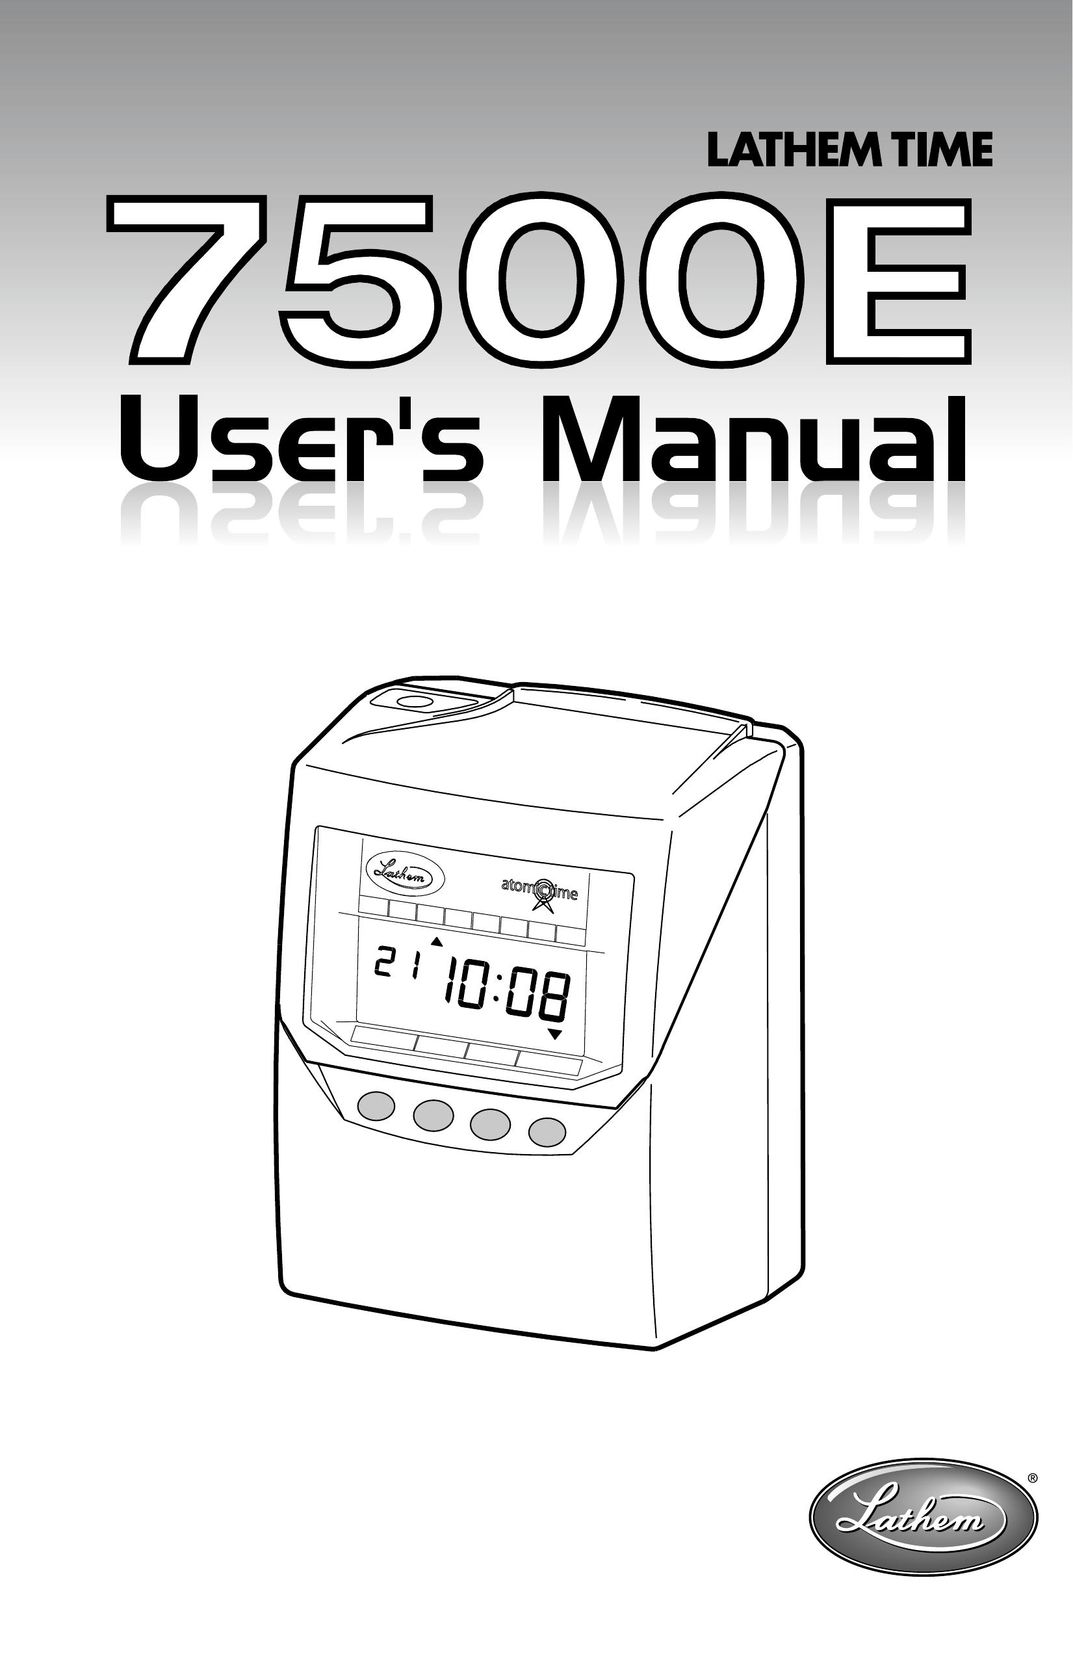 Lathem 7500E Clock User Manual